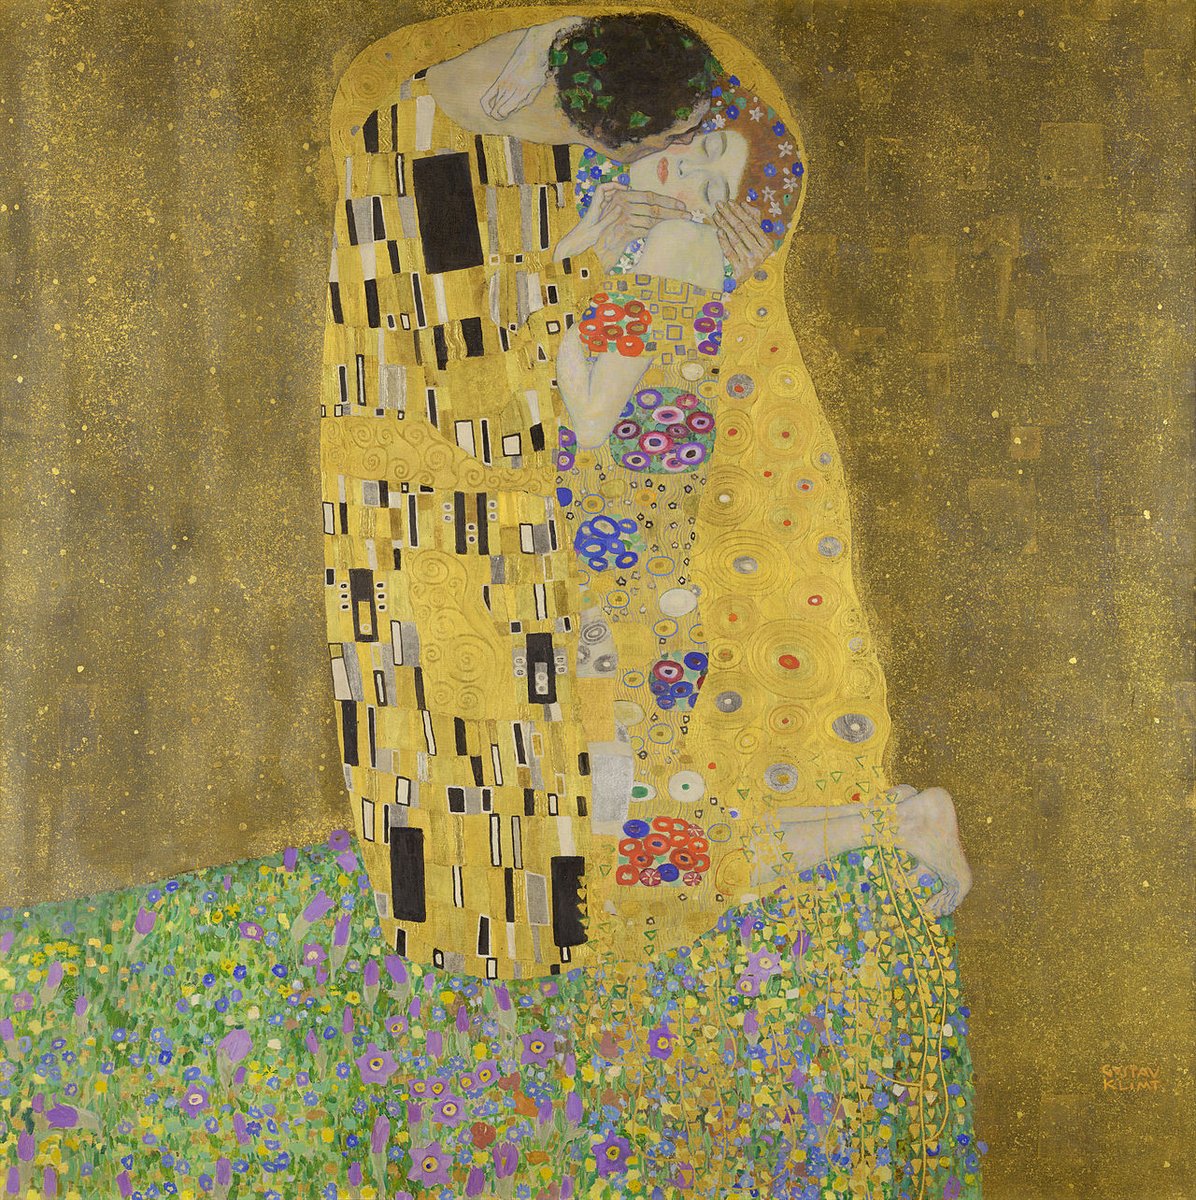 'Bo'sa' (The kiss) by Gustav Klimt